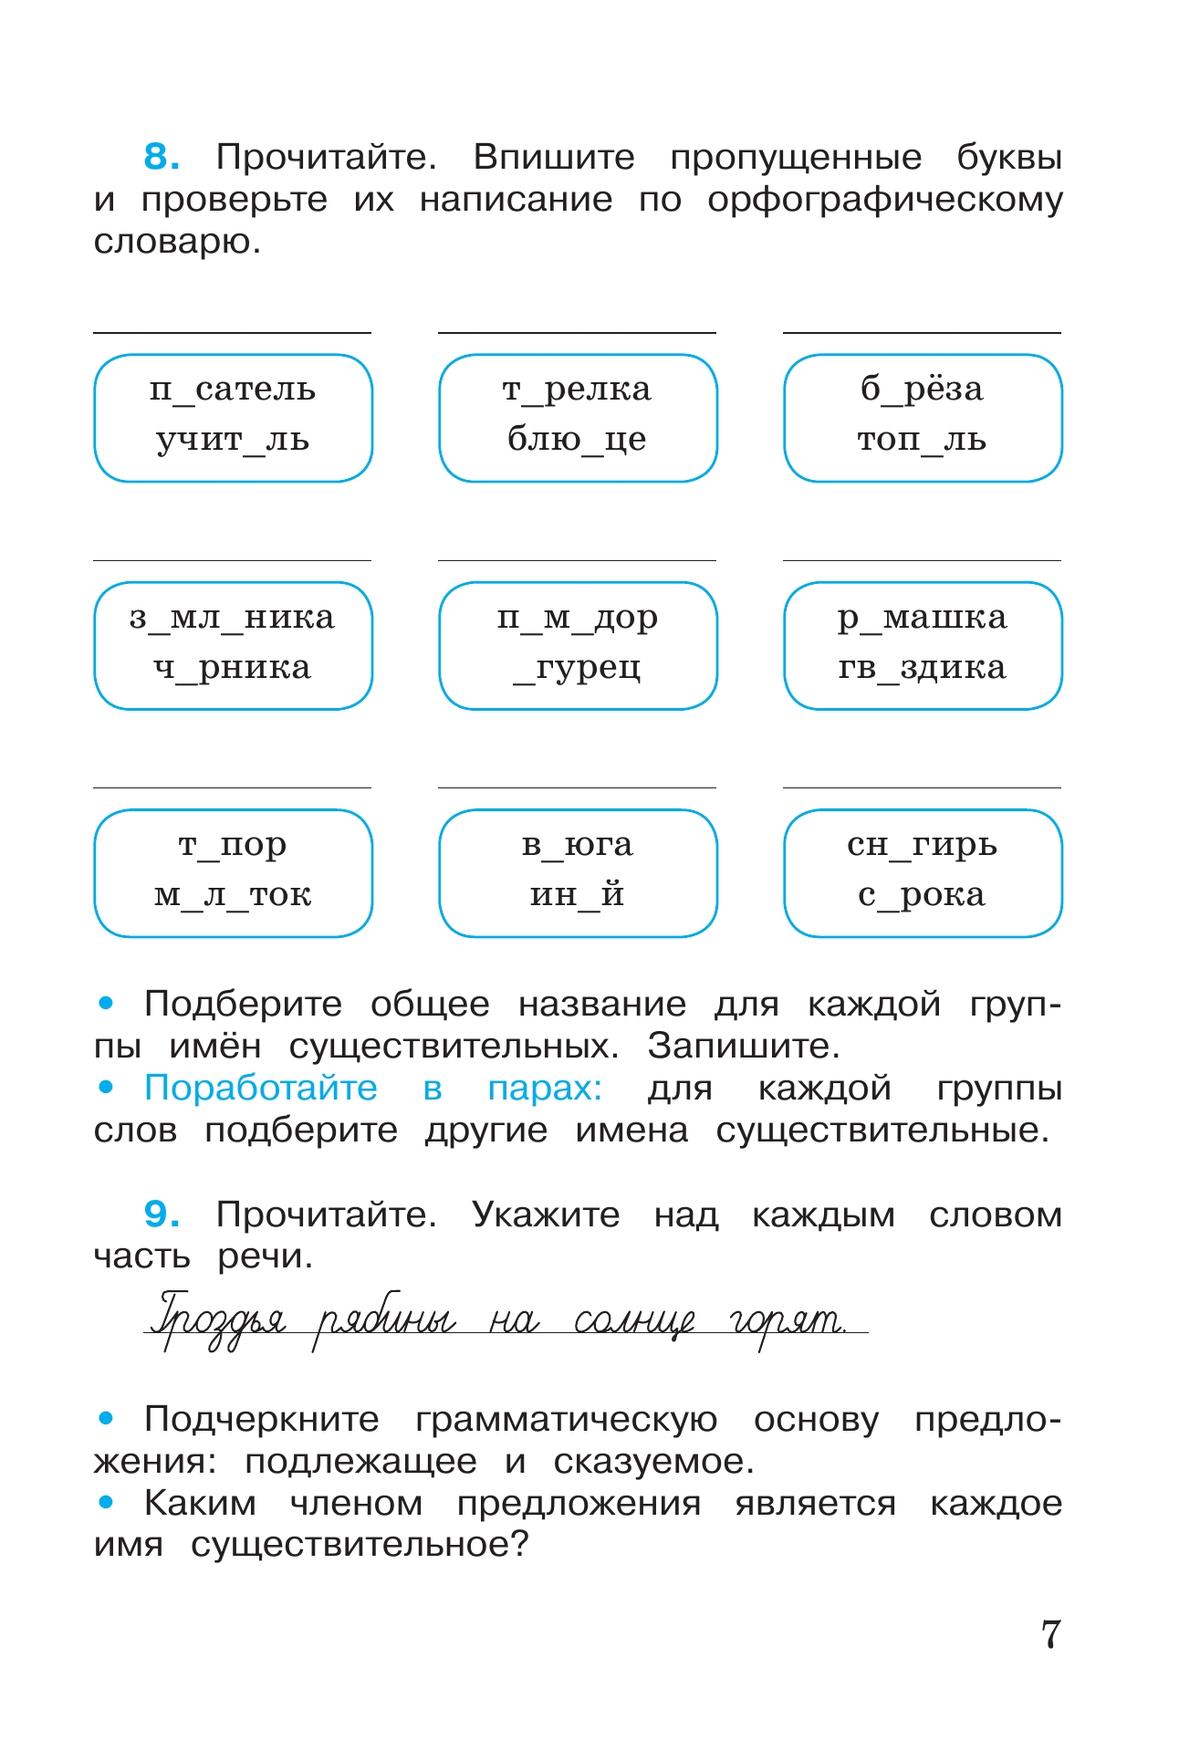 Русский язык. Рабочая тетрадь. 3 класс. В 2-х ч. Ч. 2 2